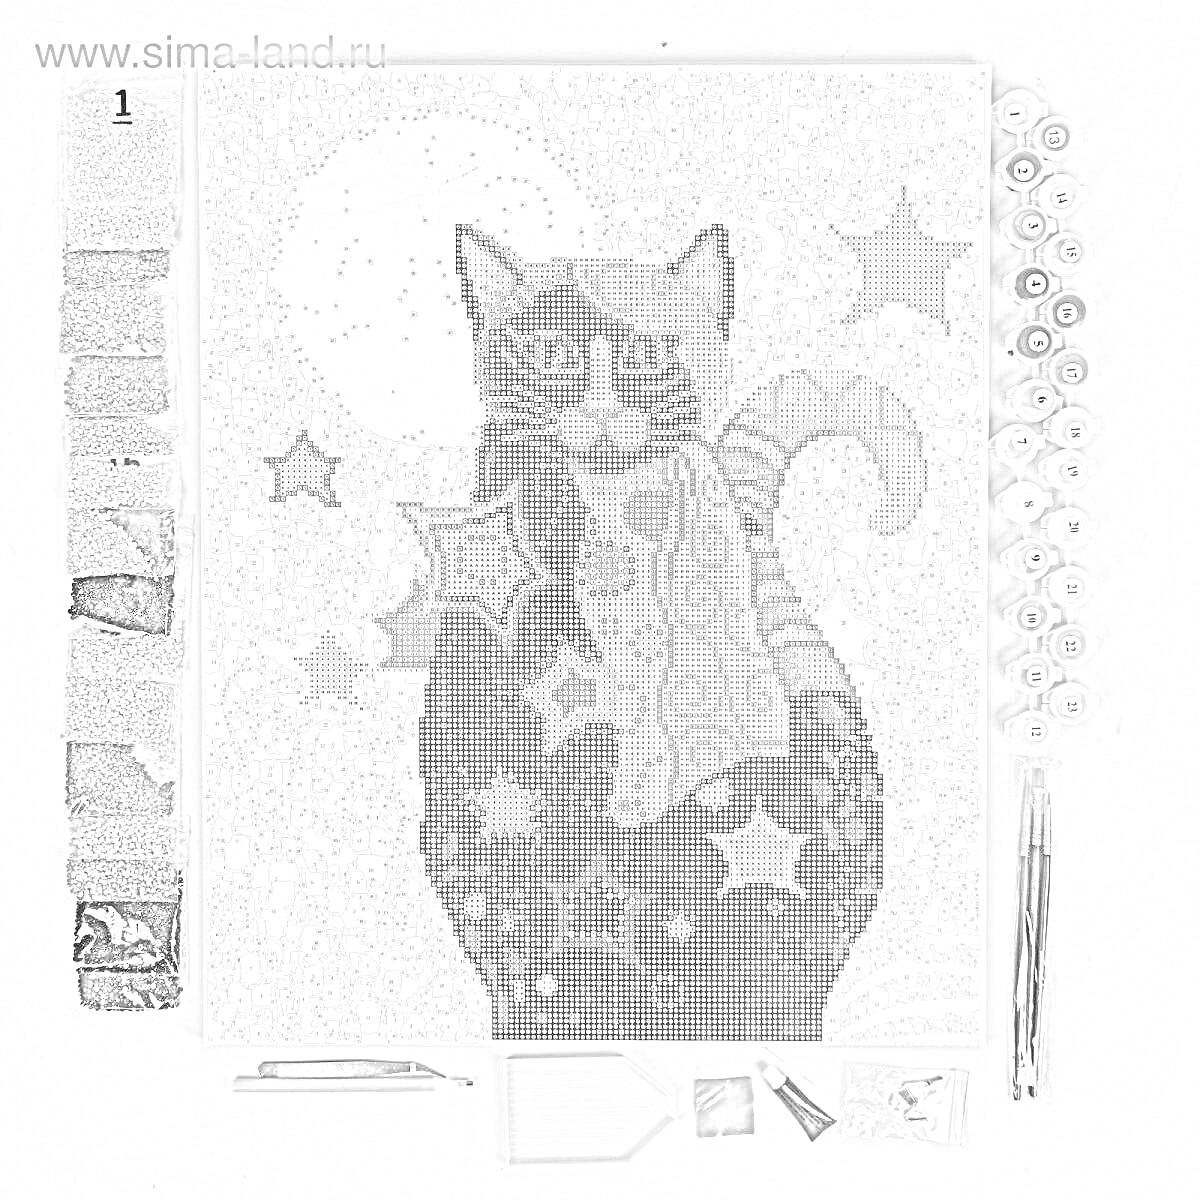 Раскраска картинка с котом, украшенная разноцветными алмазами; на фоне - разноцветные звёзды, рядом комплектующие для раскраски: разноцветные камешки, карандаш для выкладки, лоток, пинцет и клей.